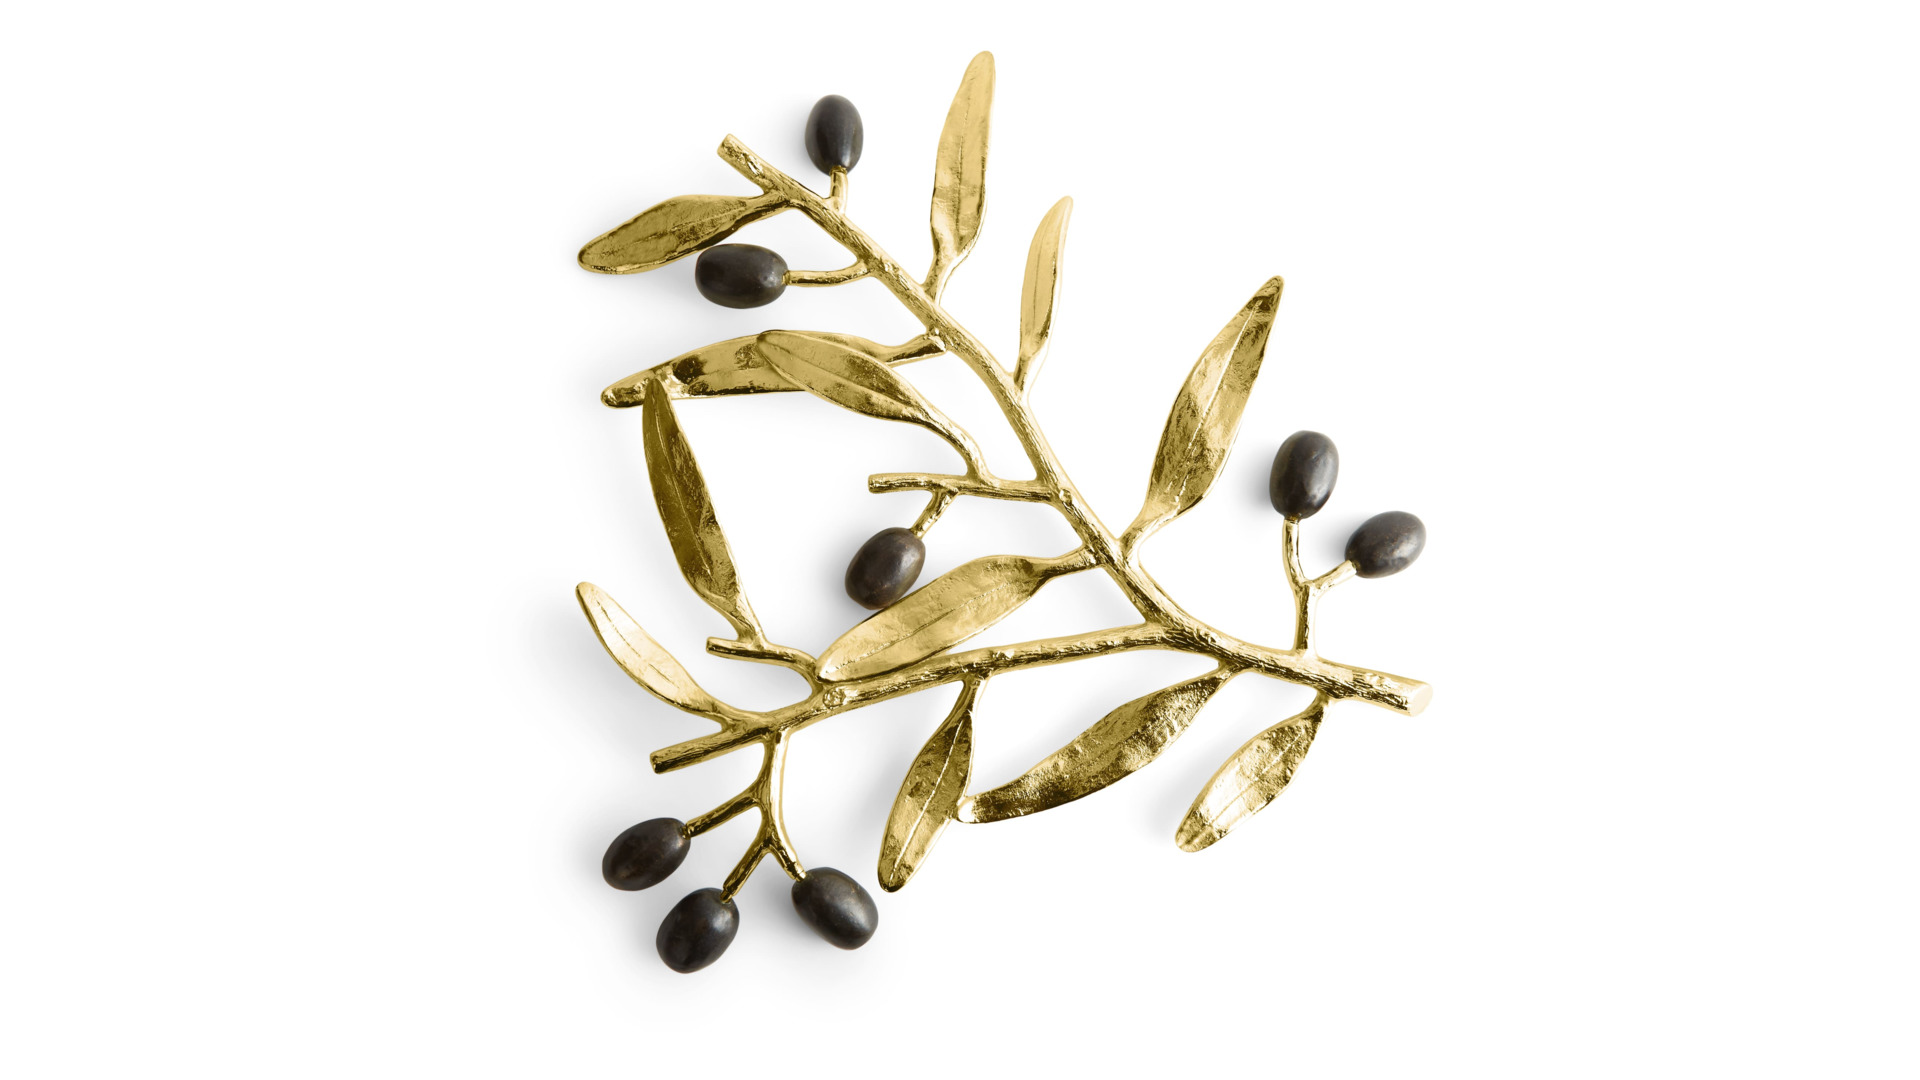 Подставка под горячее Michael Aram Золотая оливковая ветвь 25,5 см